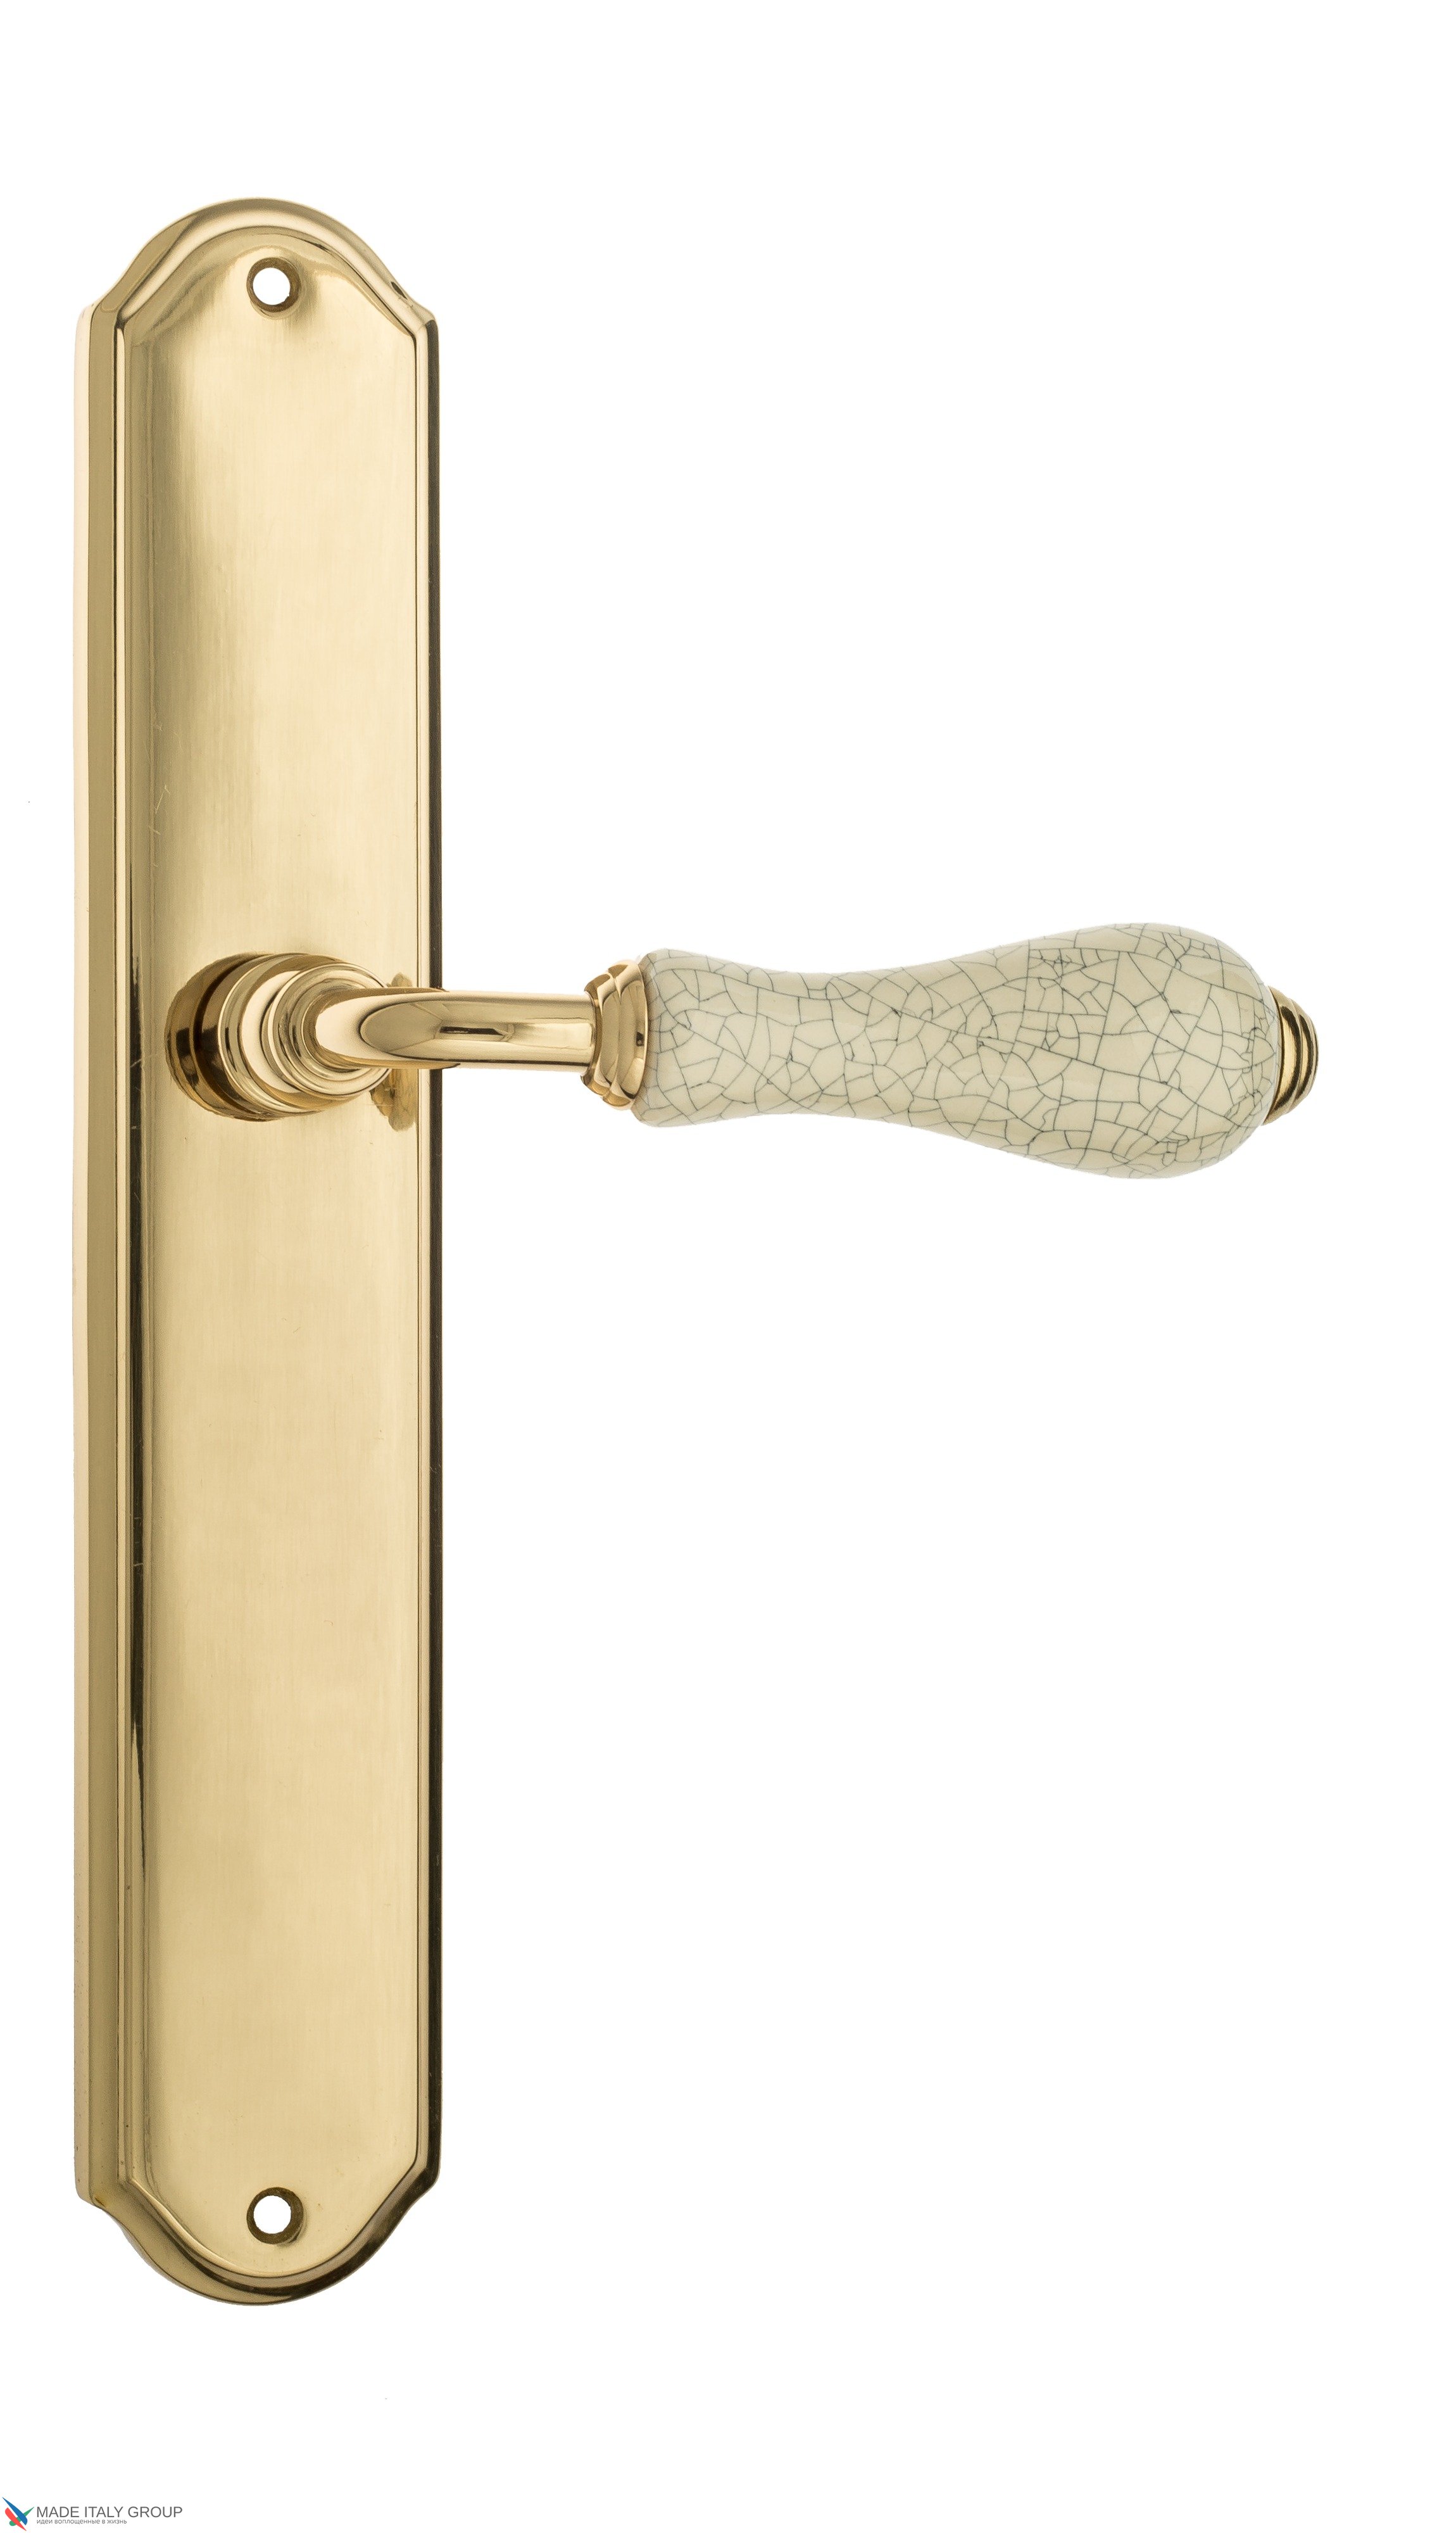 Дверная ручка Venezia "COLOSSEO" белая керамика паутинка на планке PL02 полированная латунь